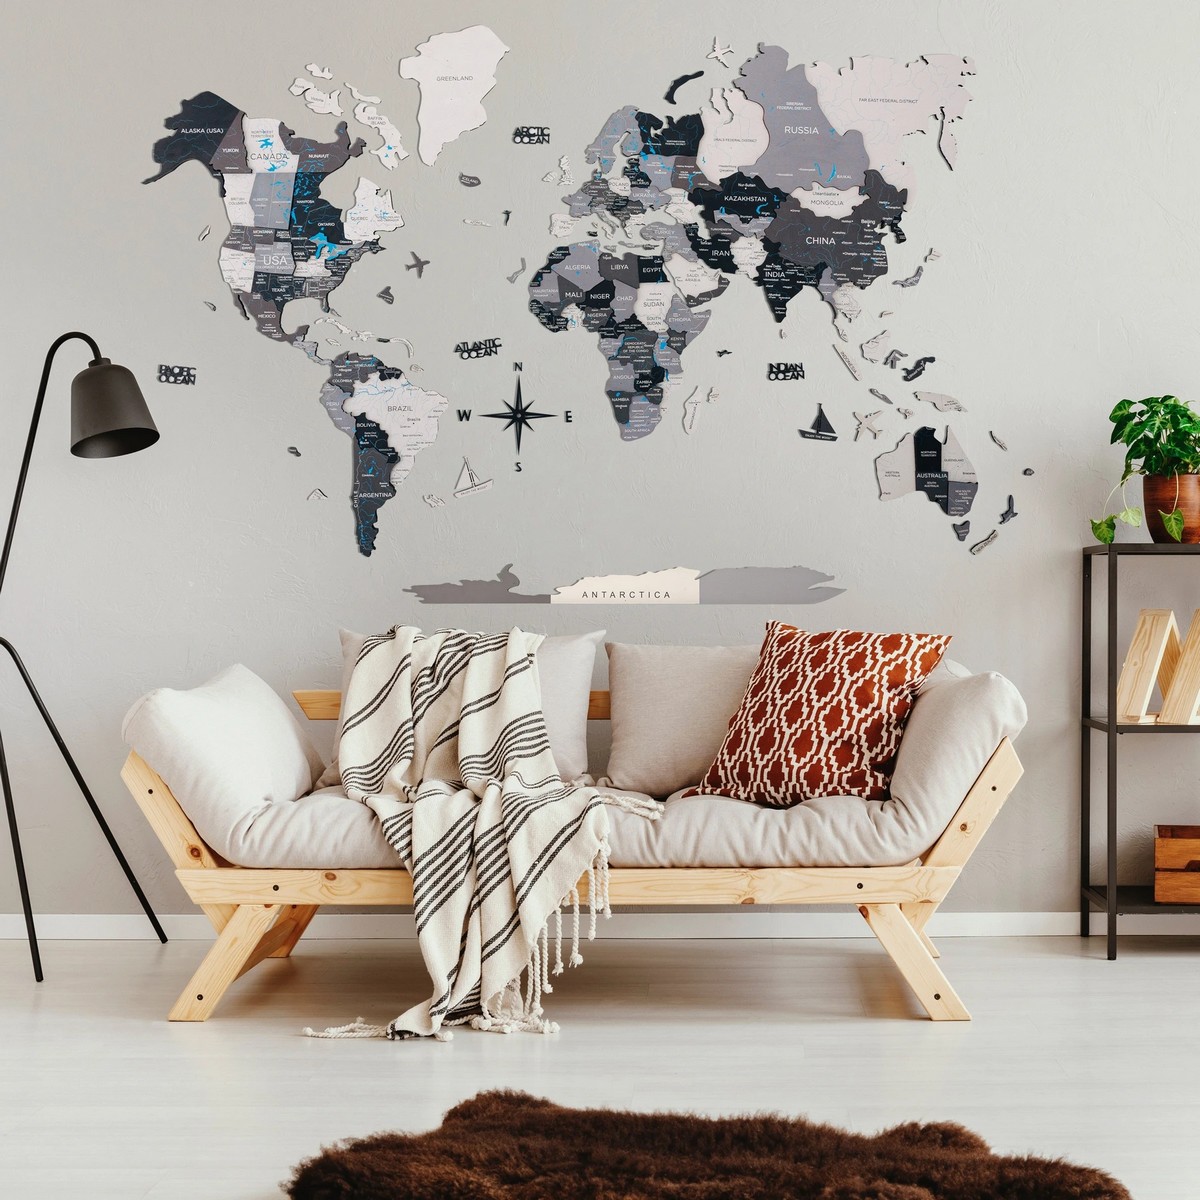 خريطة حائط للعالم مصنوعة من الخشب